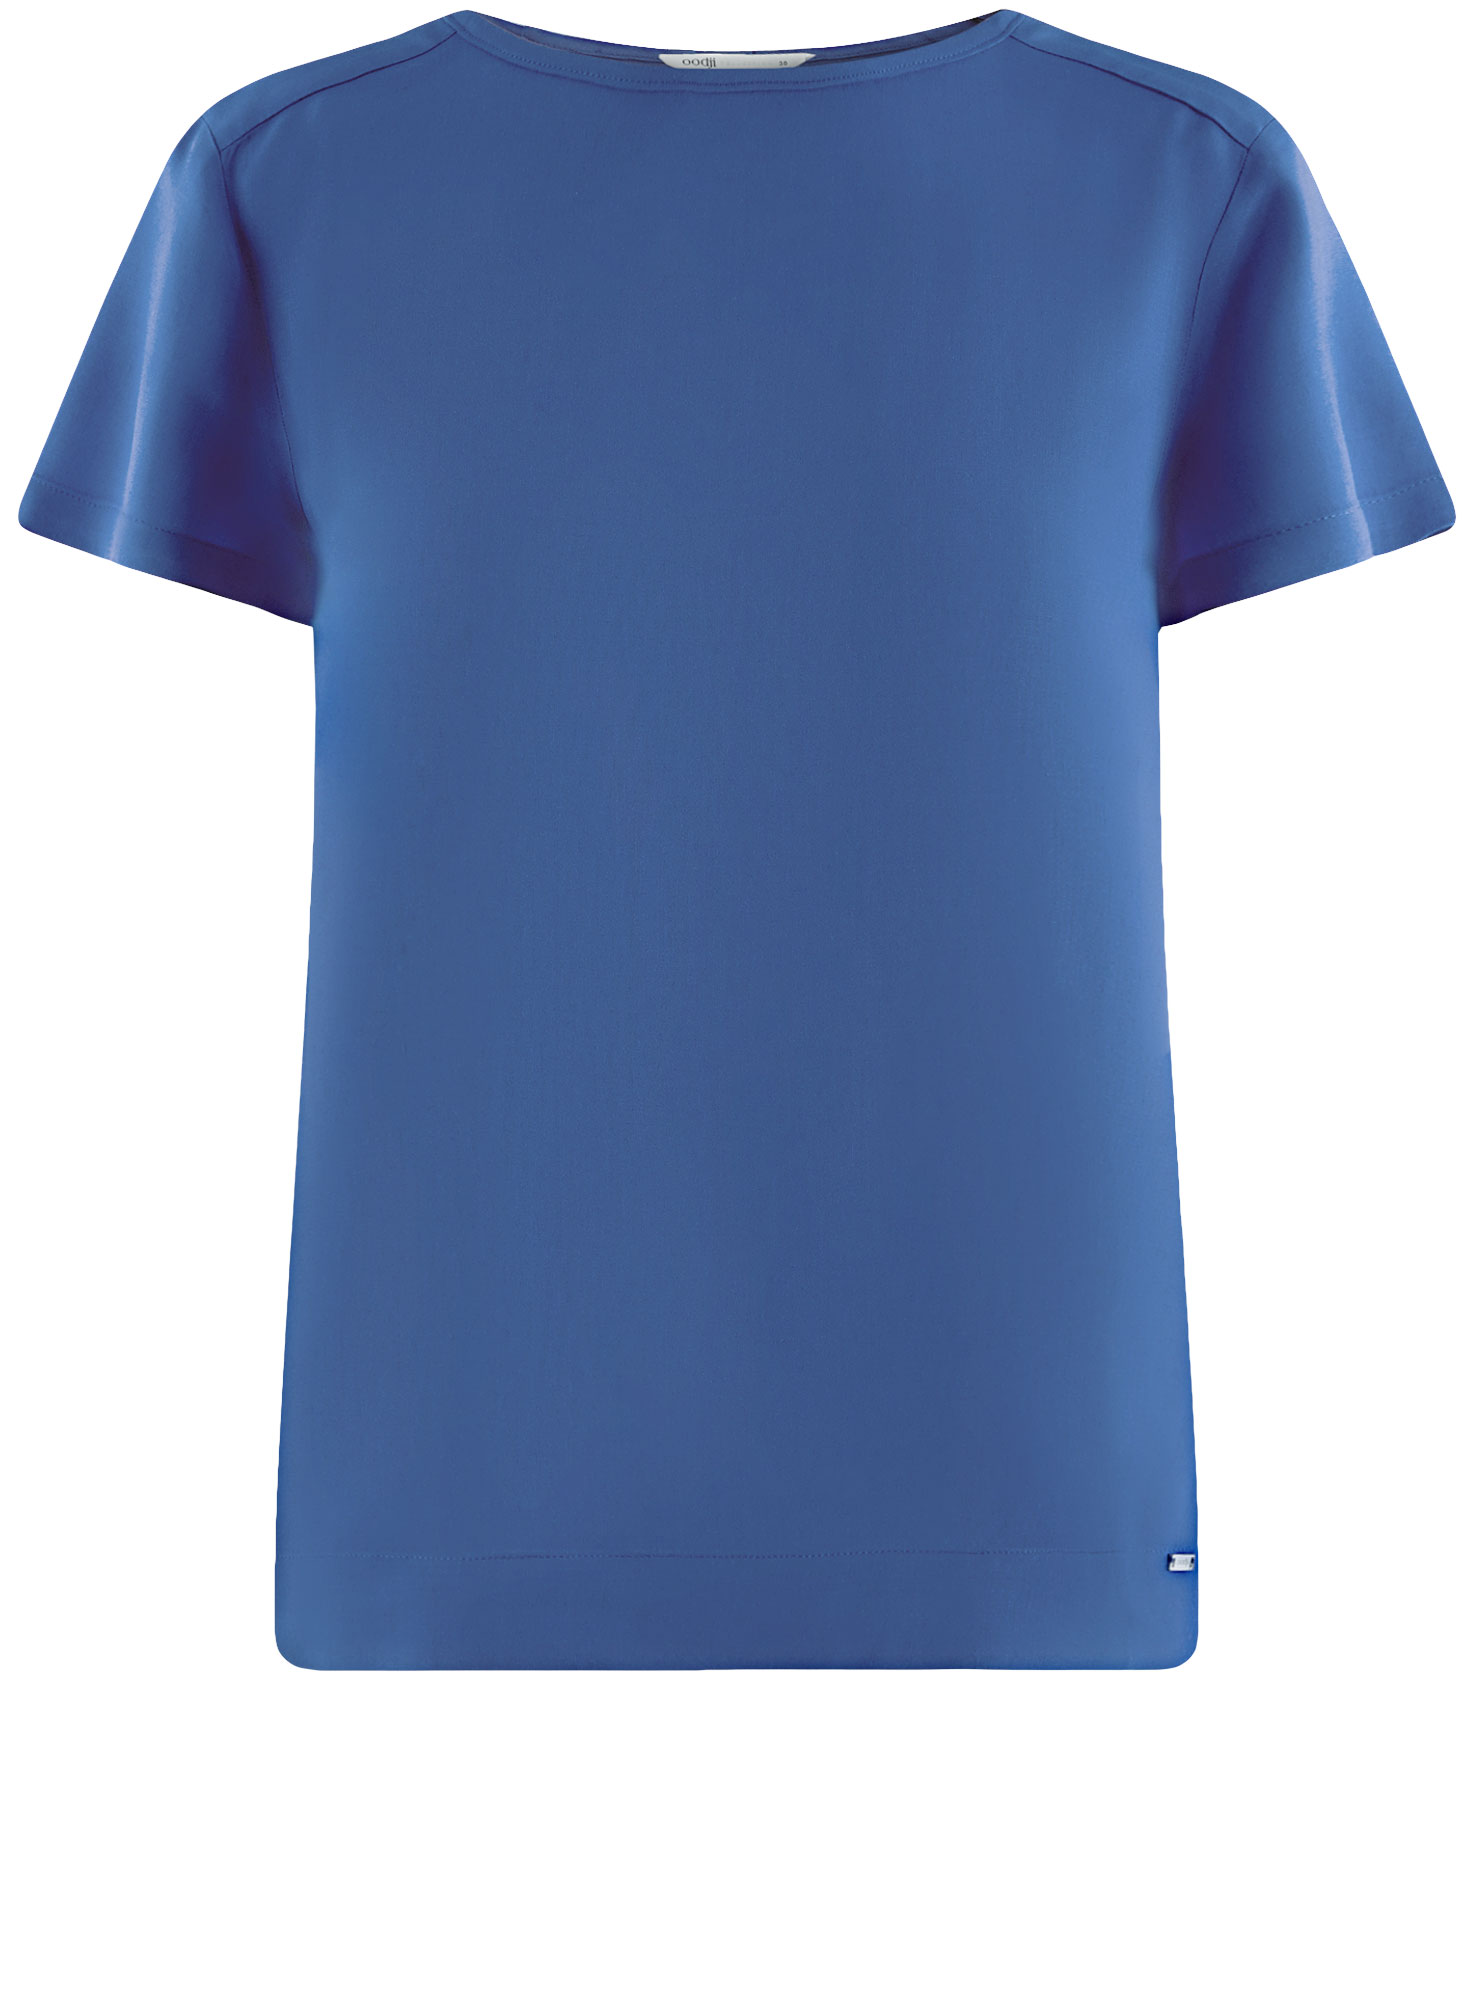 Блуза женская oodji 21411119-1 синяя 36 EU